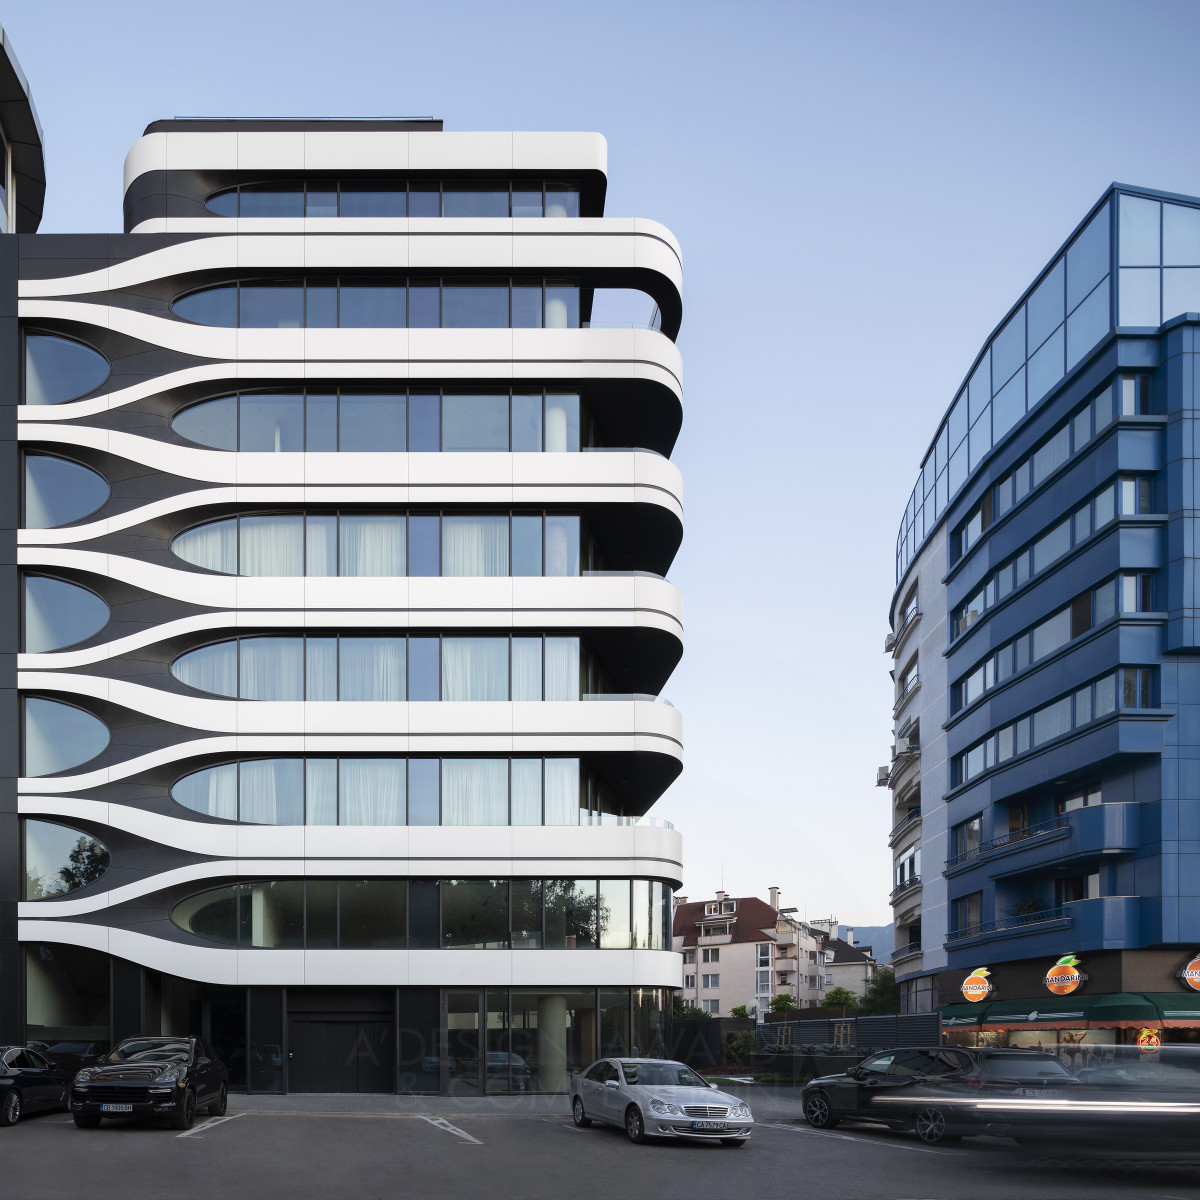 B73 Apartments : Une Réalisation Architecturale Innovante